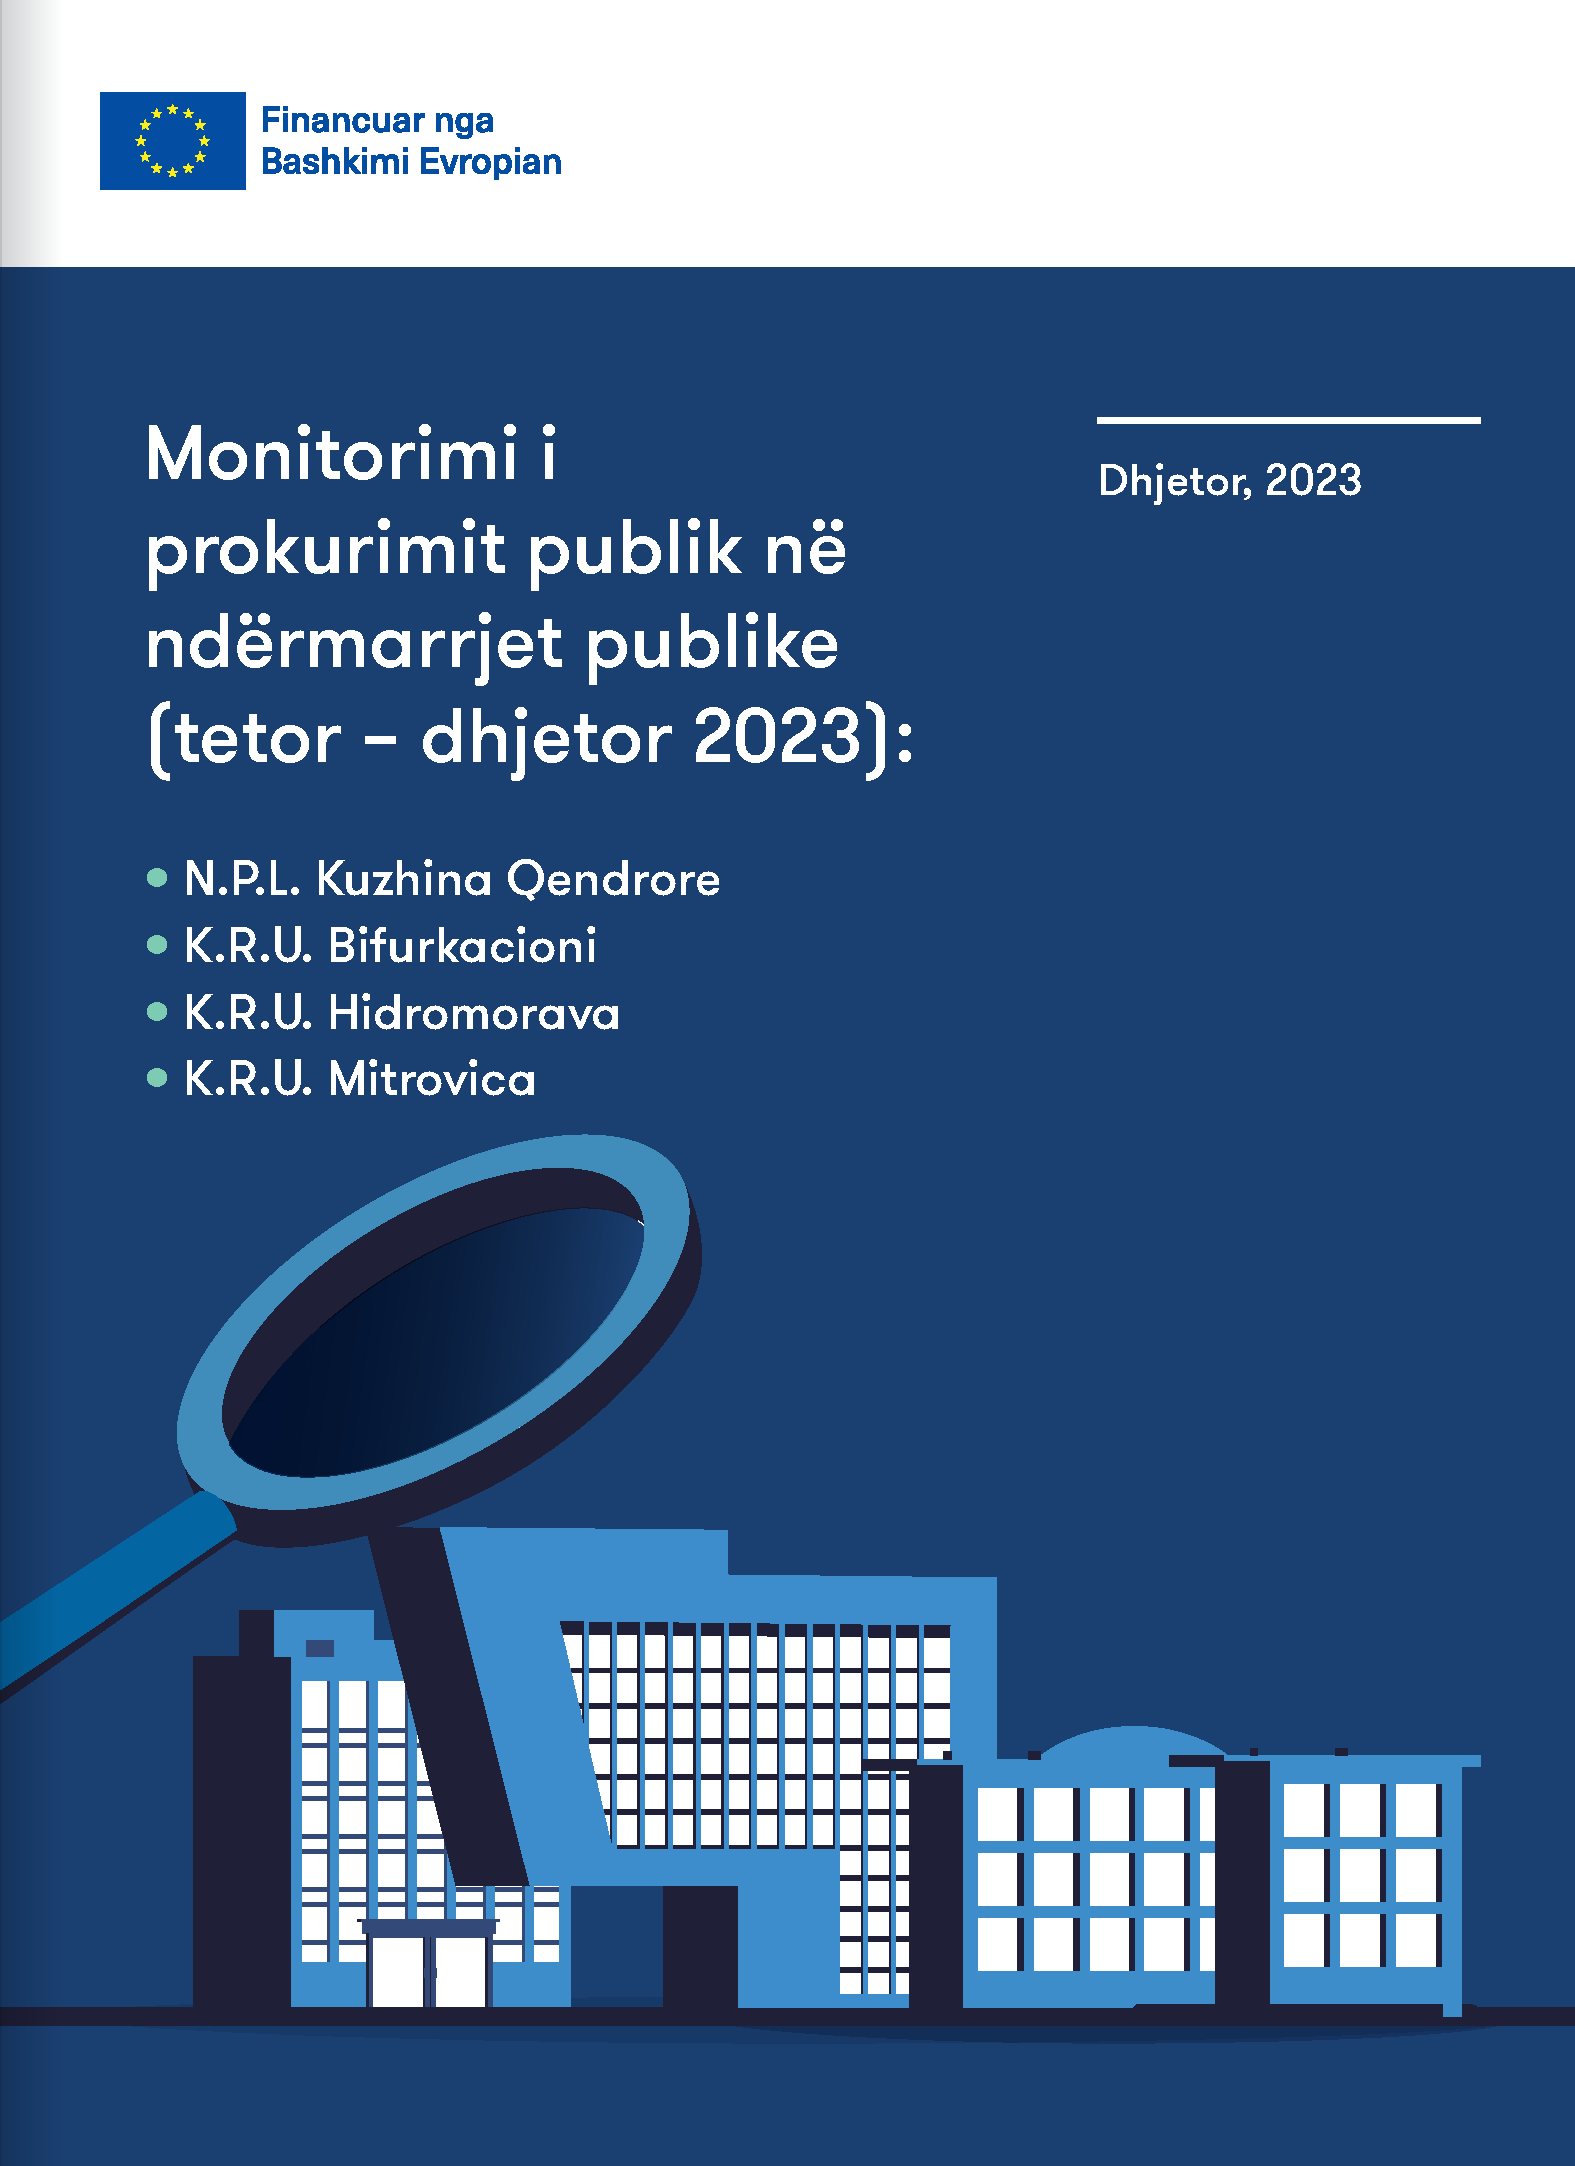 Monitorimi i prokurimit publik në ndërmarrjet publike (tetor – dhjetor 2023)